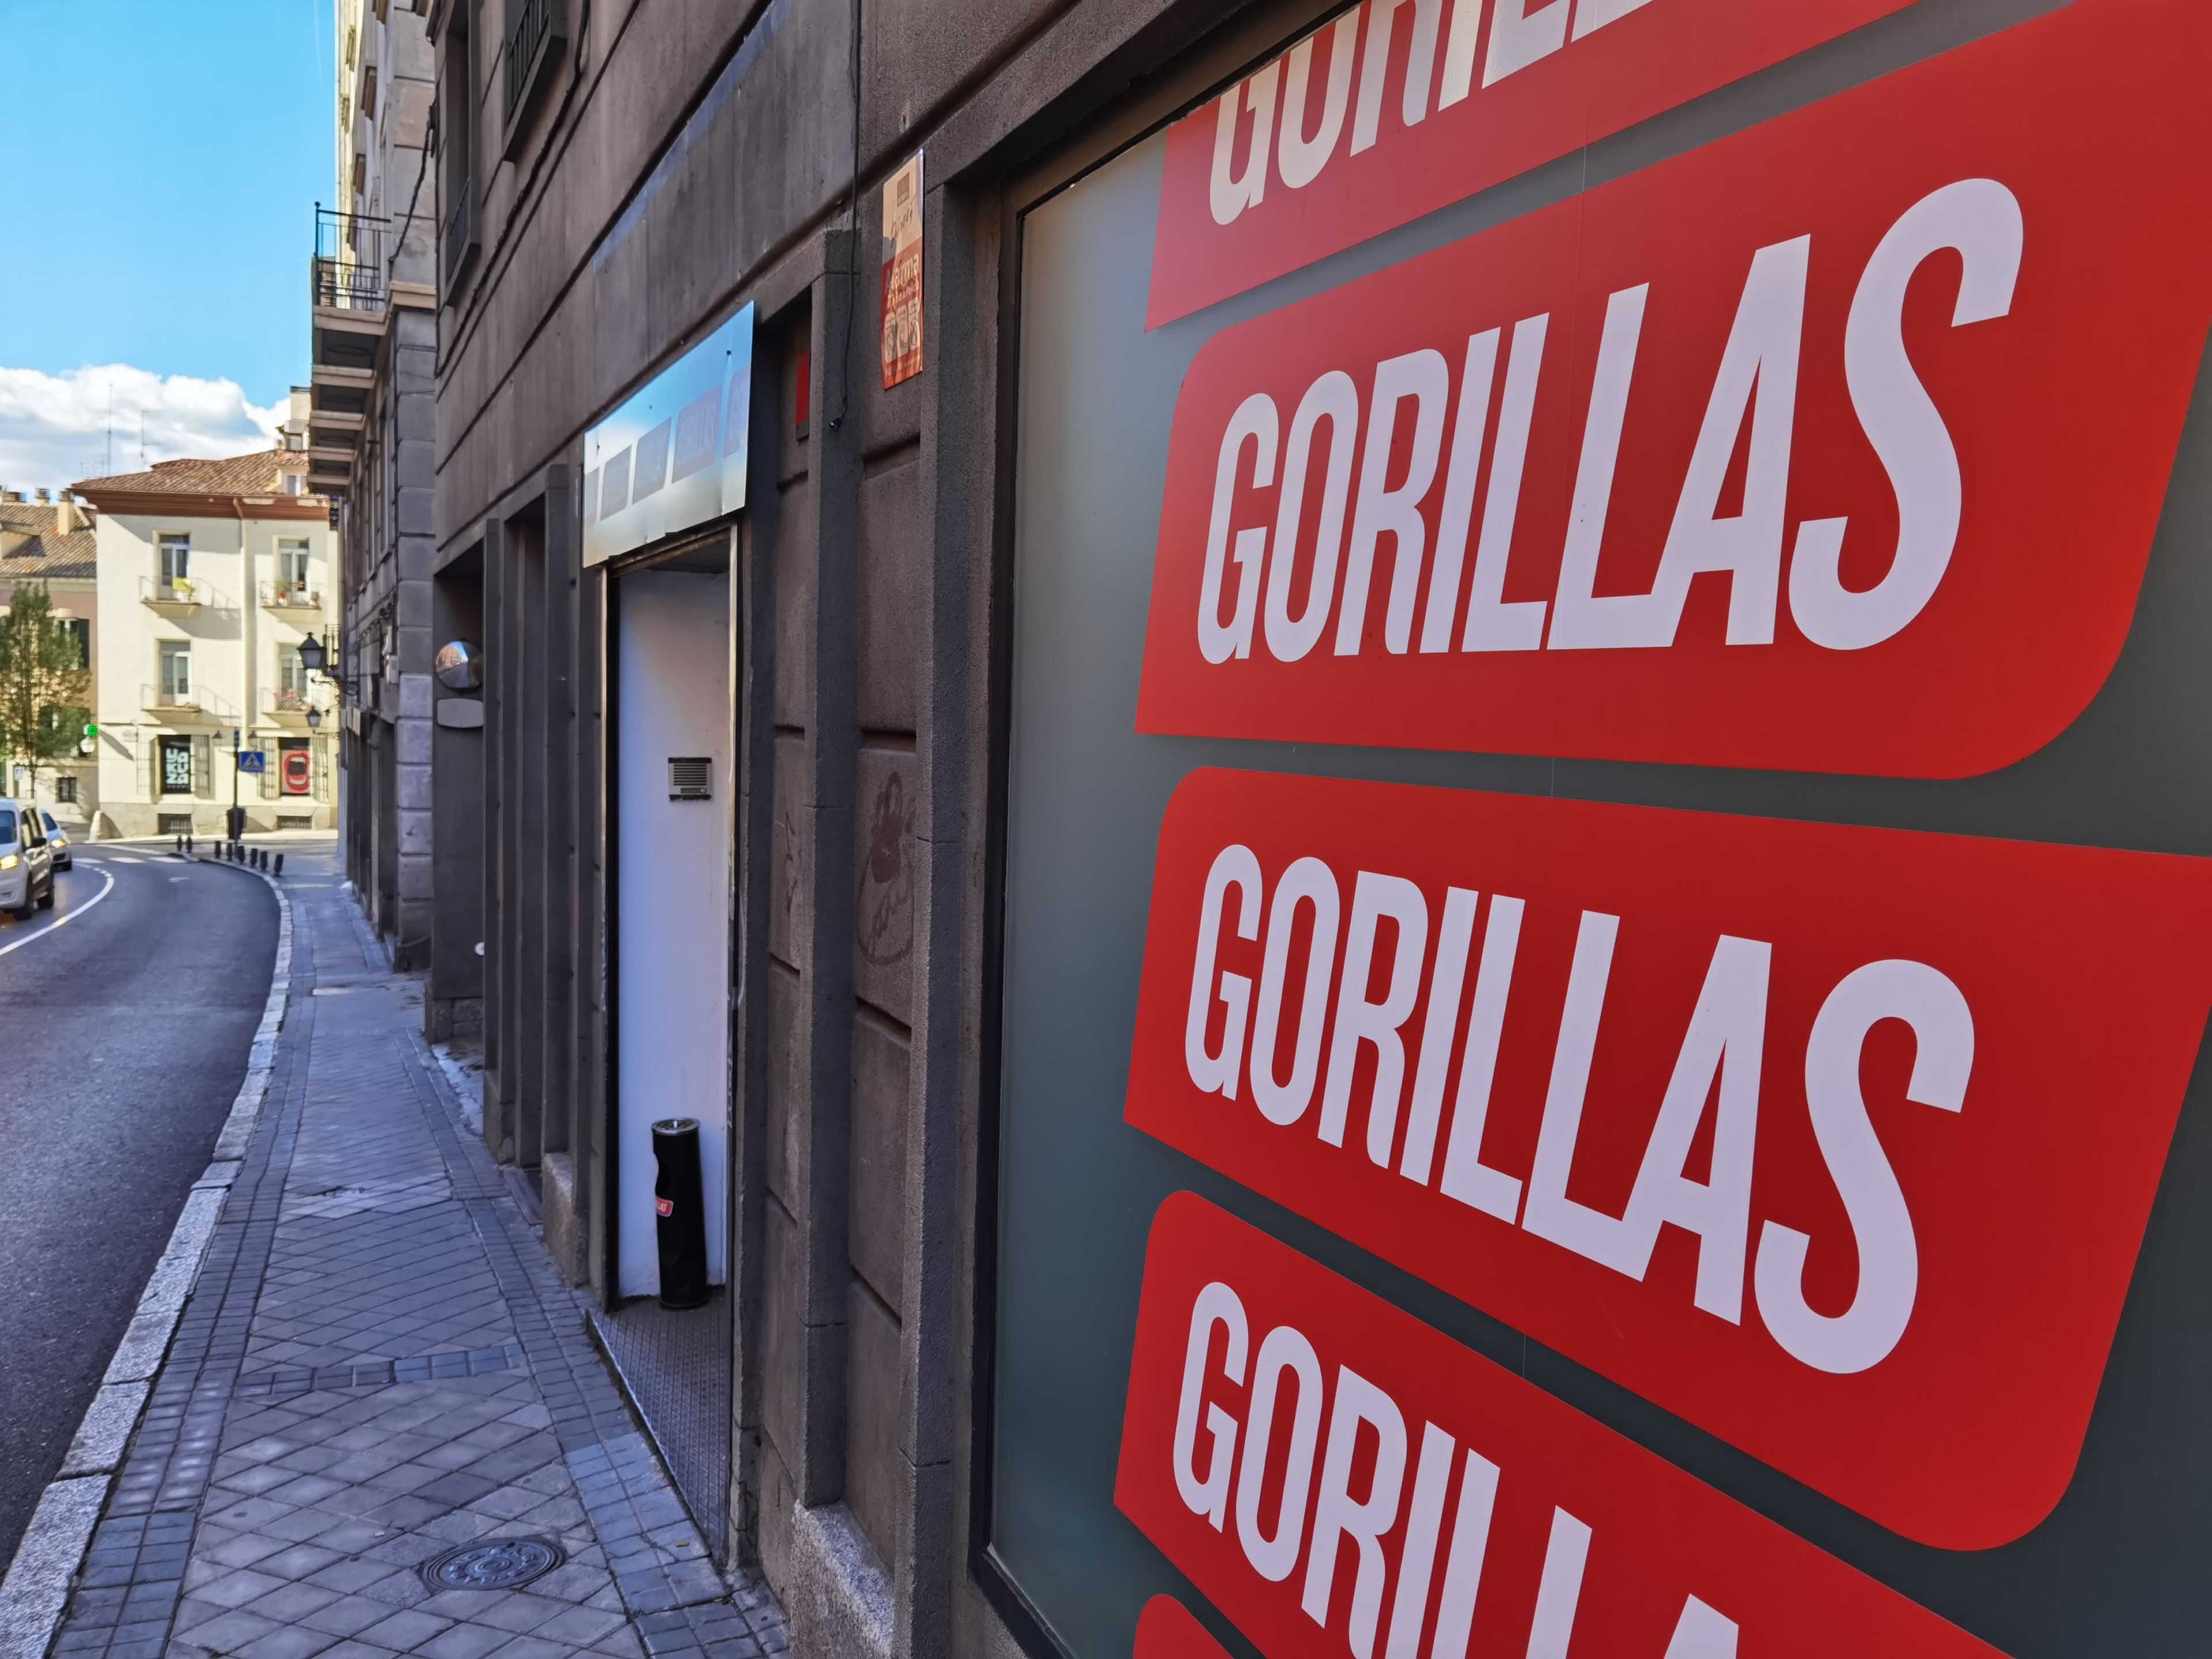 La entrada de un 'supermercado fantasma' de la compañía alemana Gorillas.